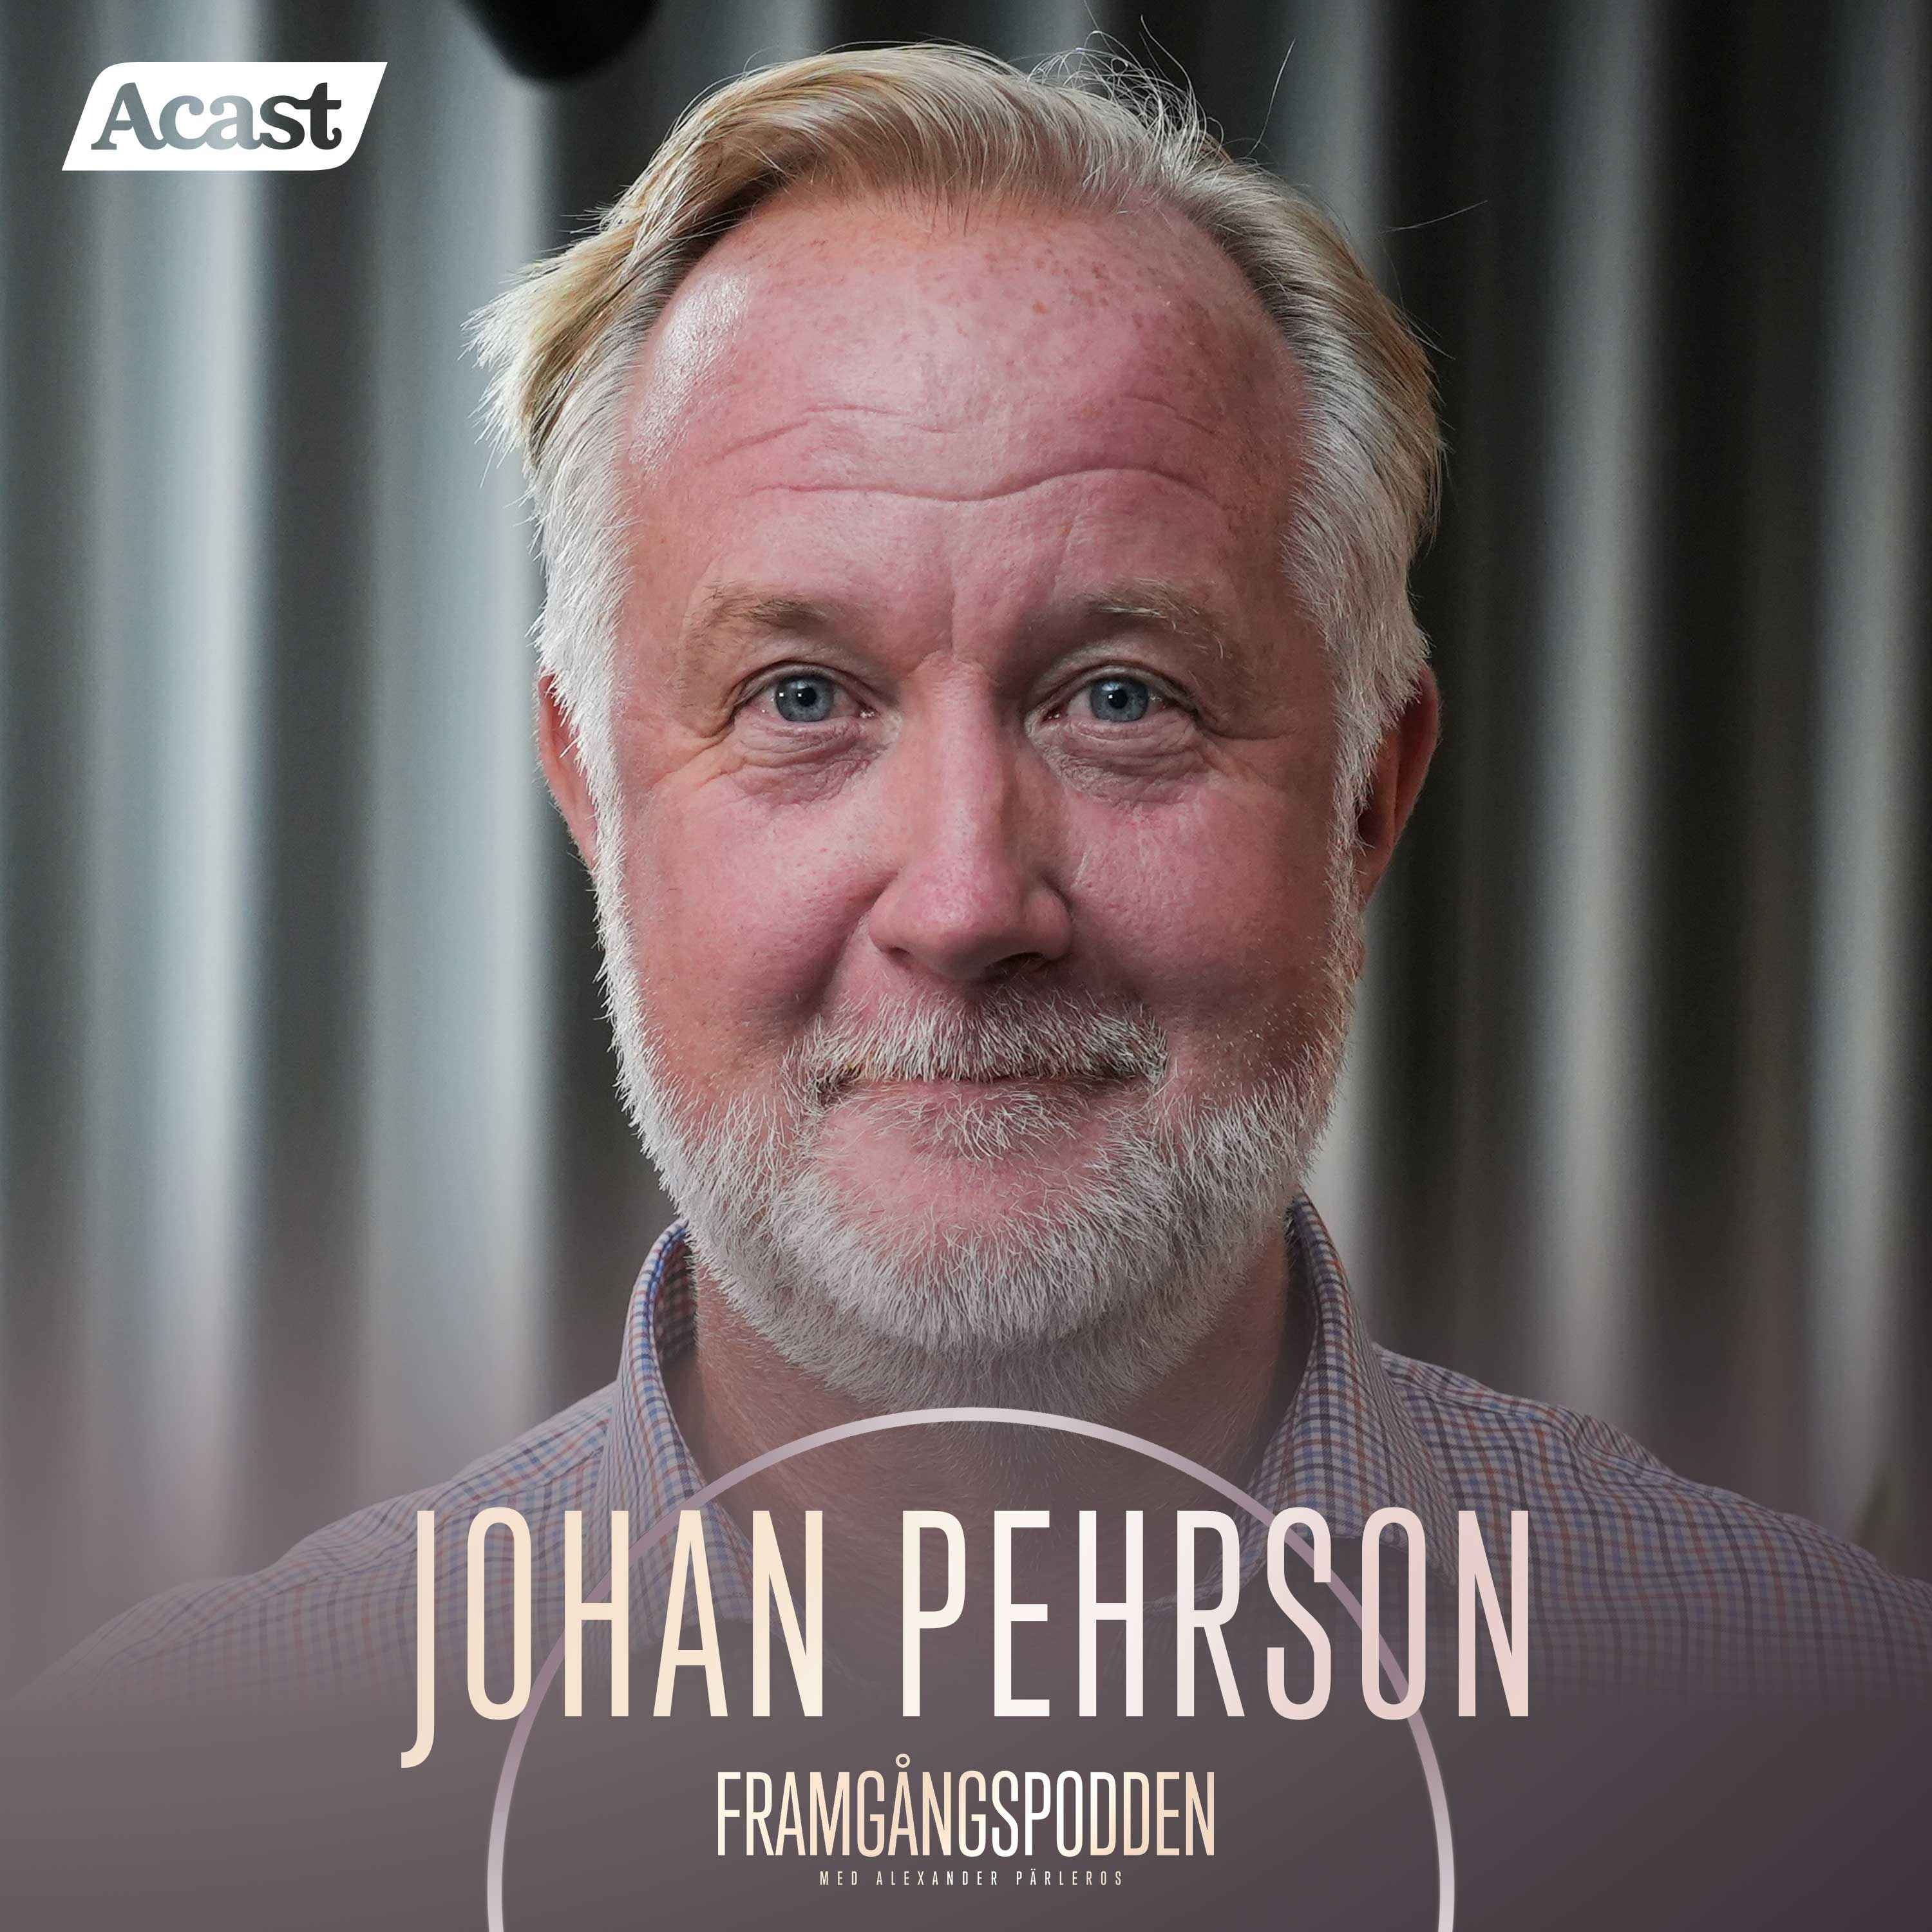 617. Johan Pehrson - Om relationen till SD, språkkrav & lärdomarna från näringslivet, Short